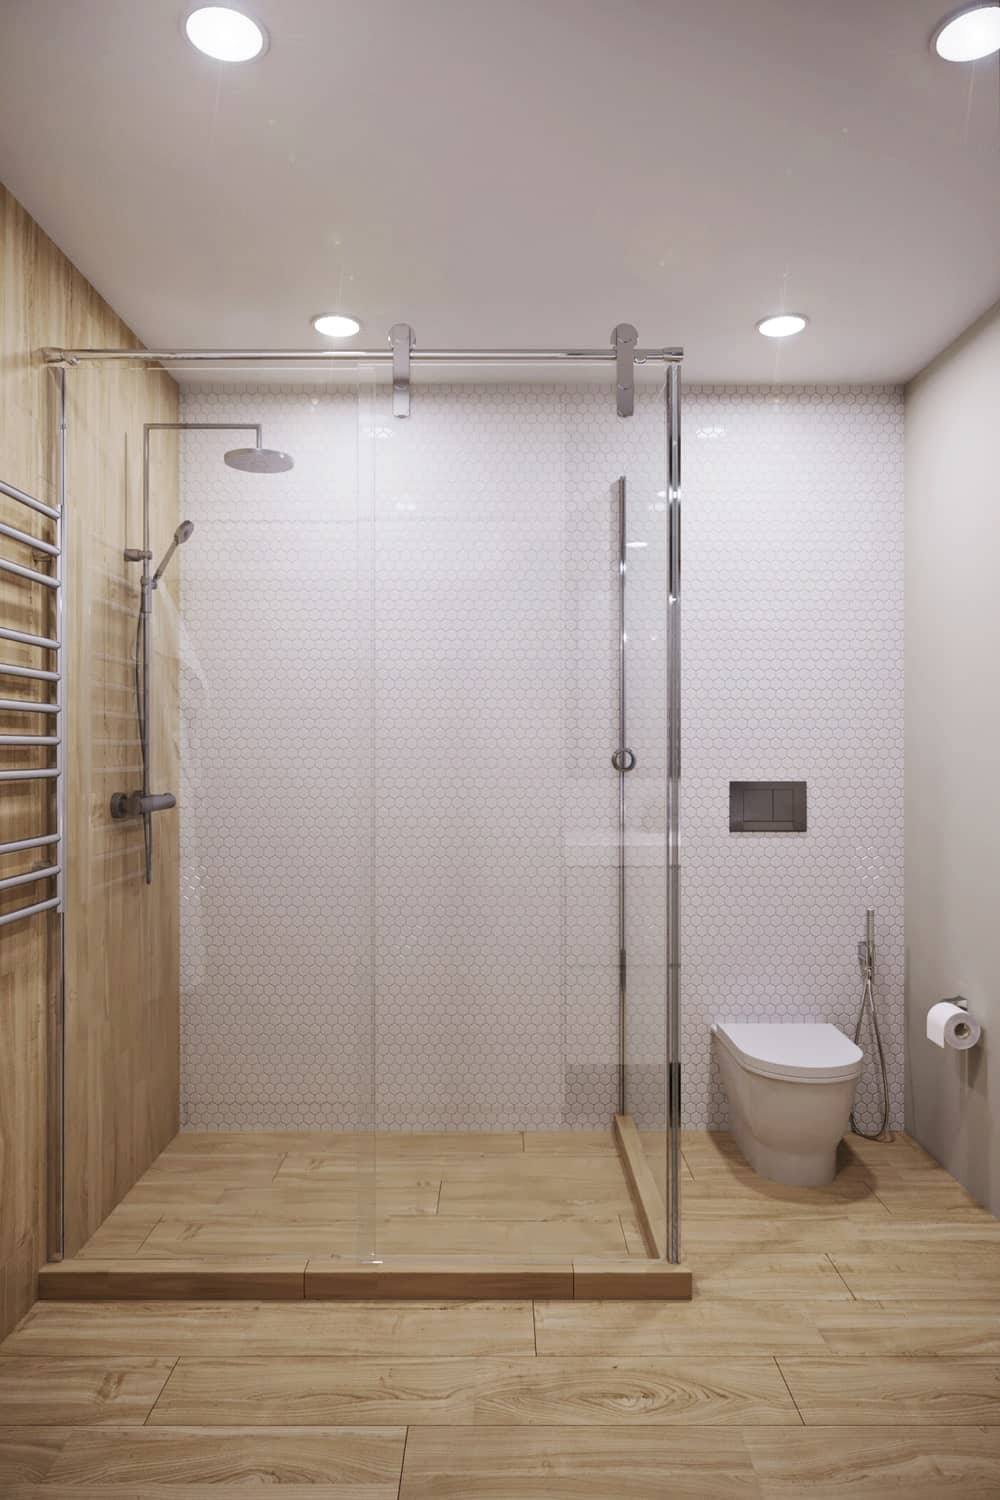 这张浴室视图展示了更多的玻璃封闭的淋浴区和旁边的浴室。